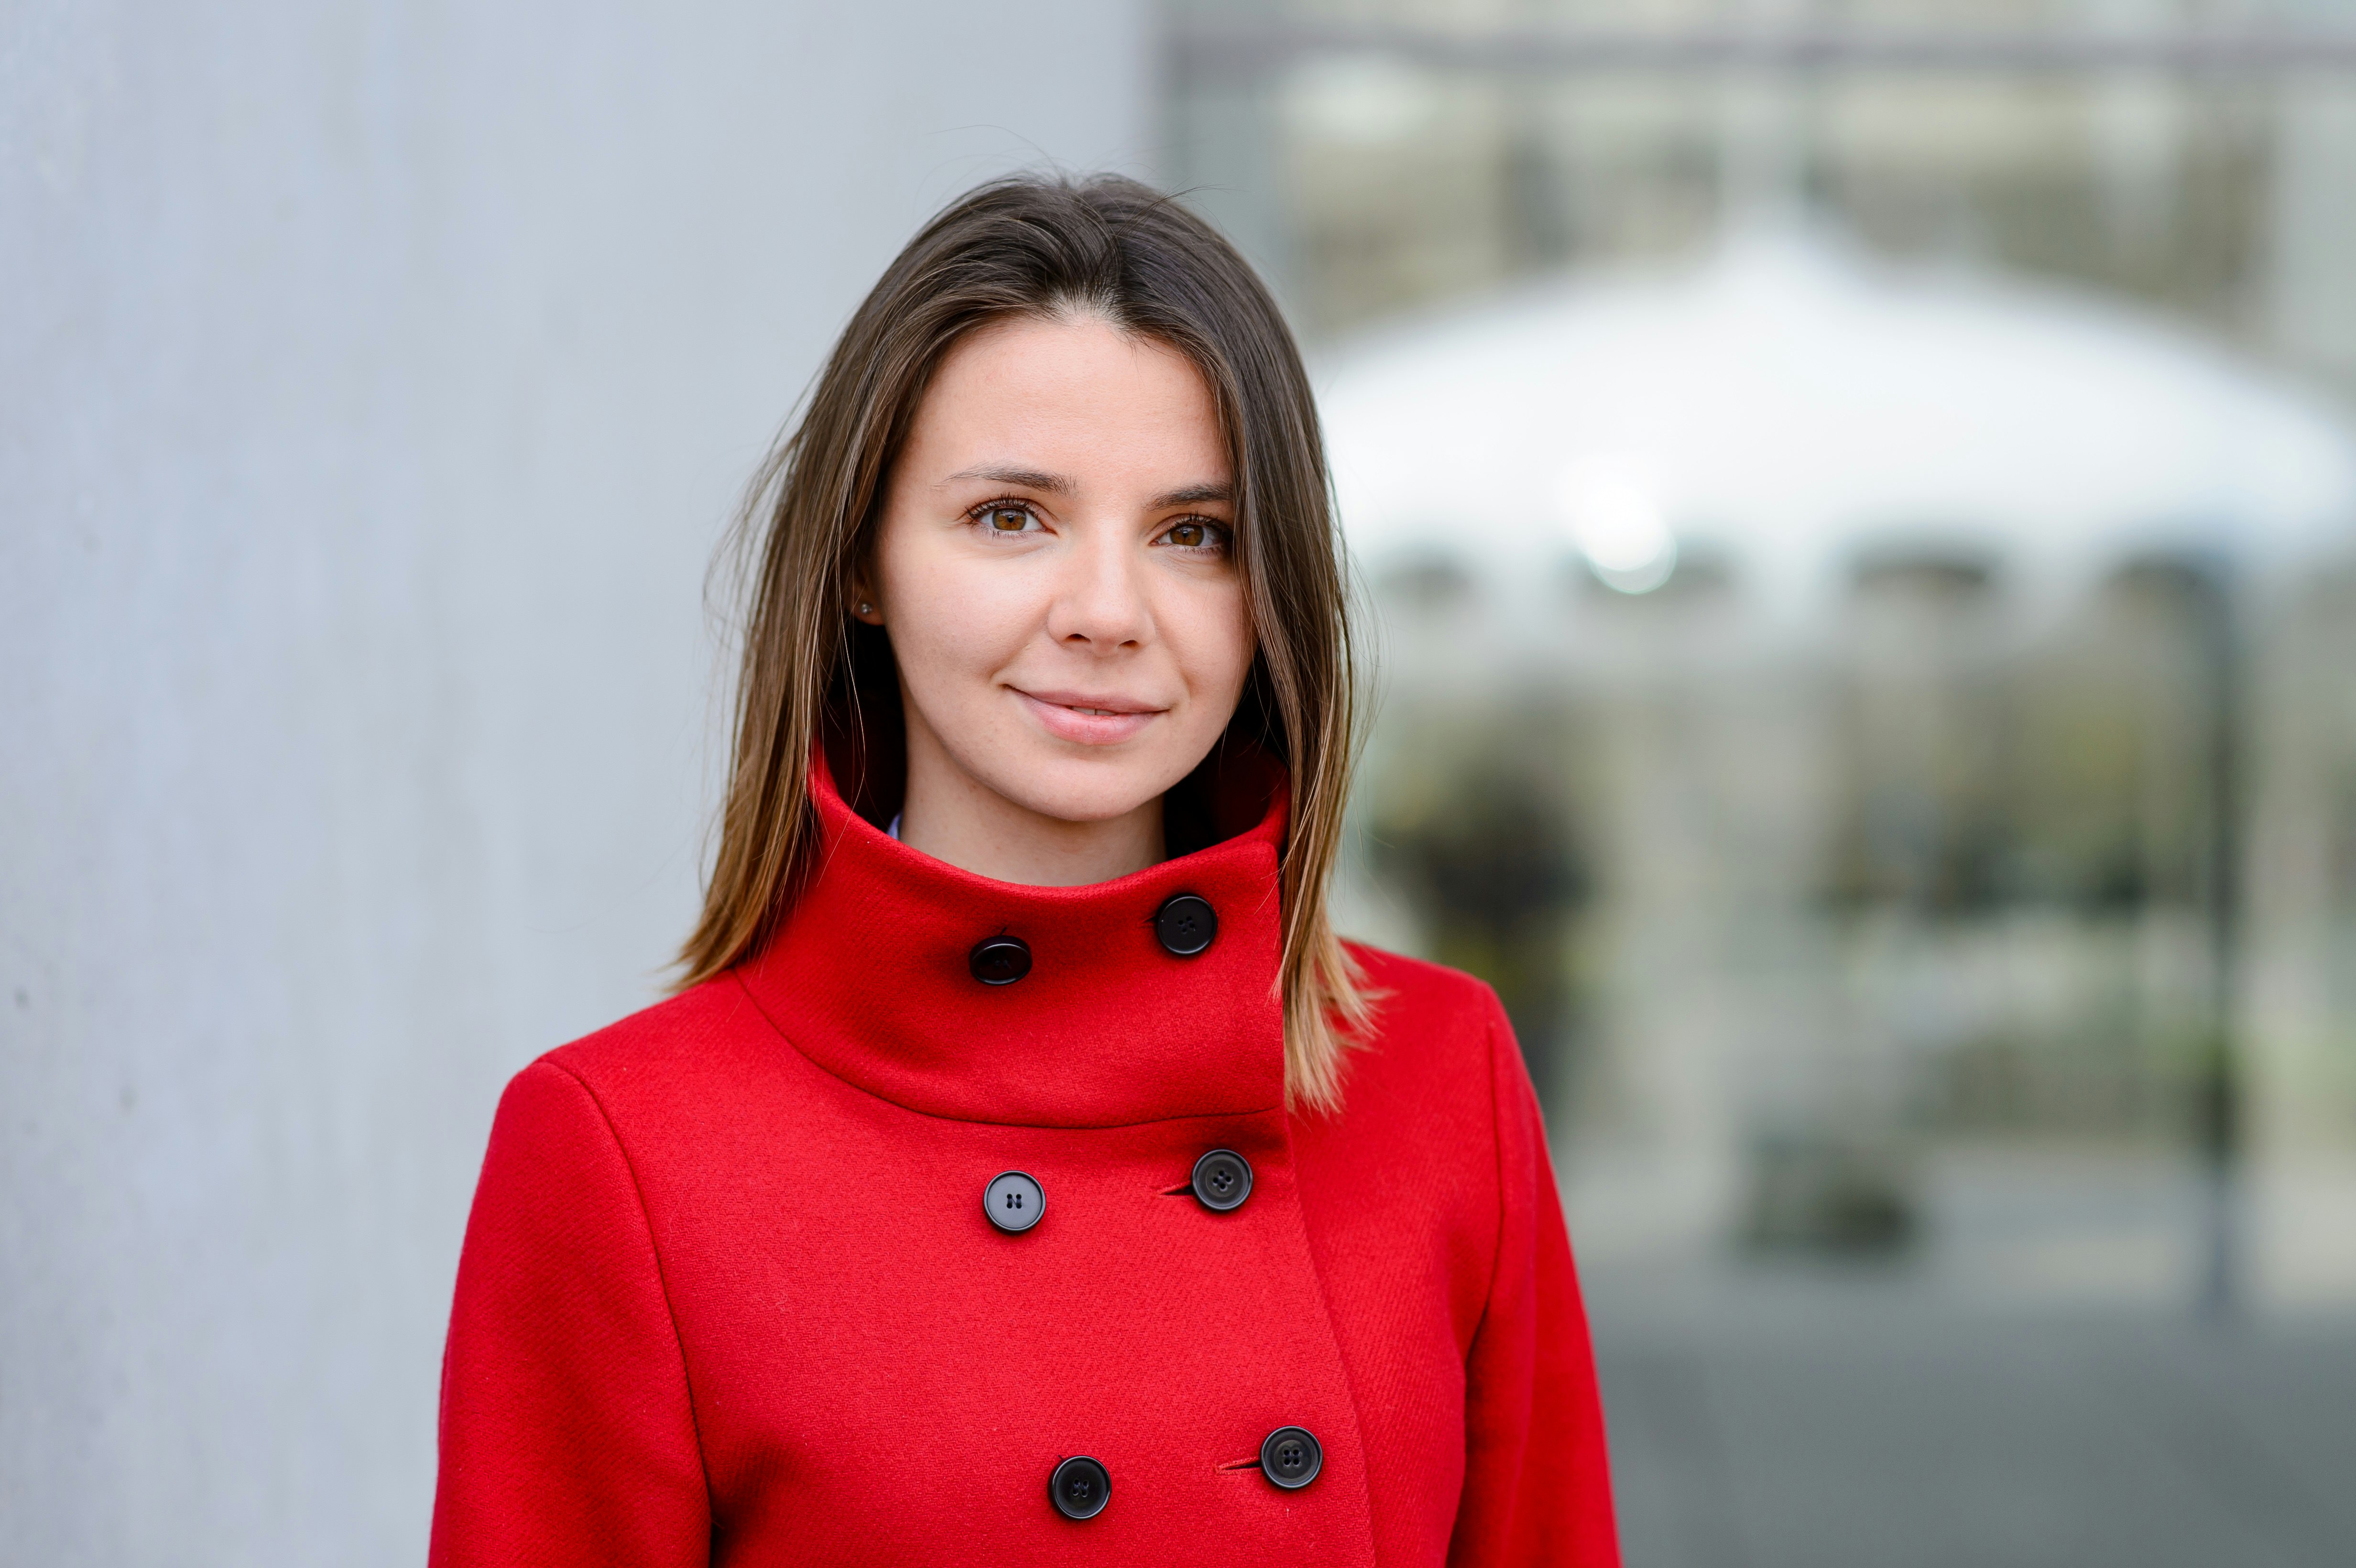 Profilfoto von Zoia Bylinovich in leuchtend rotem Mantel.